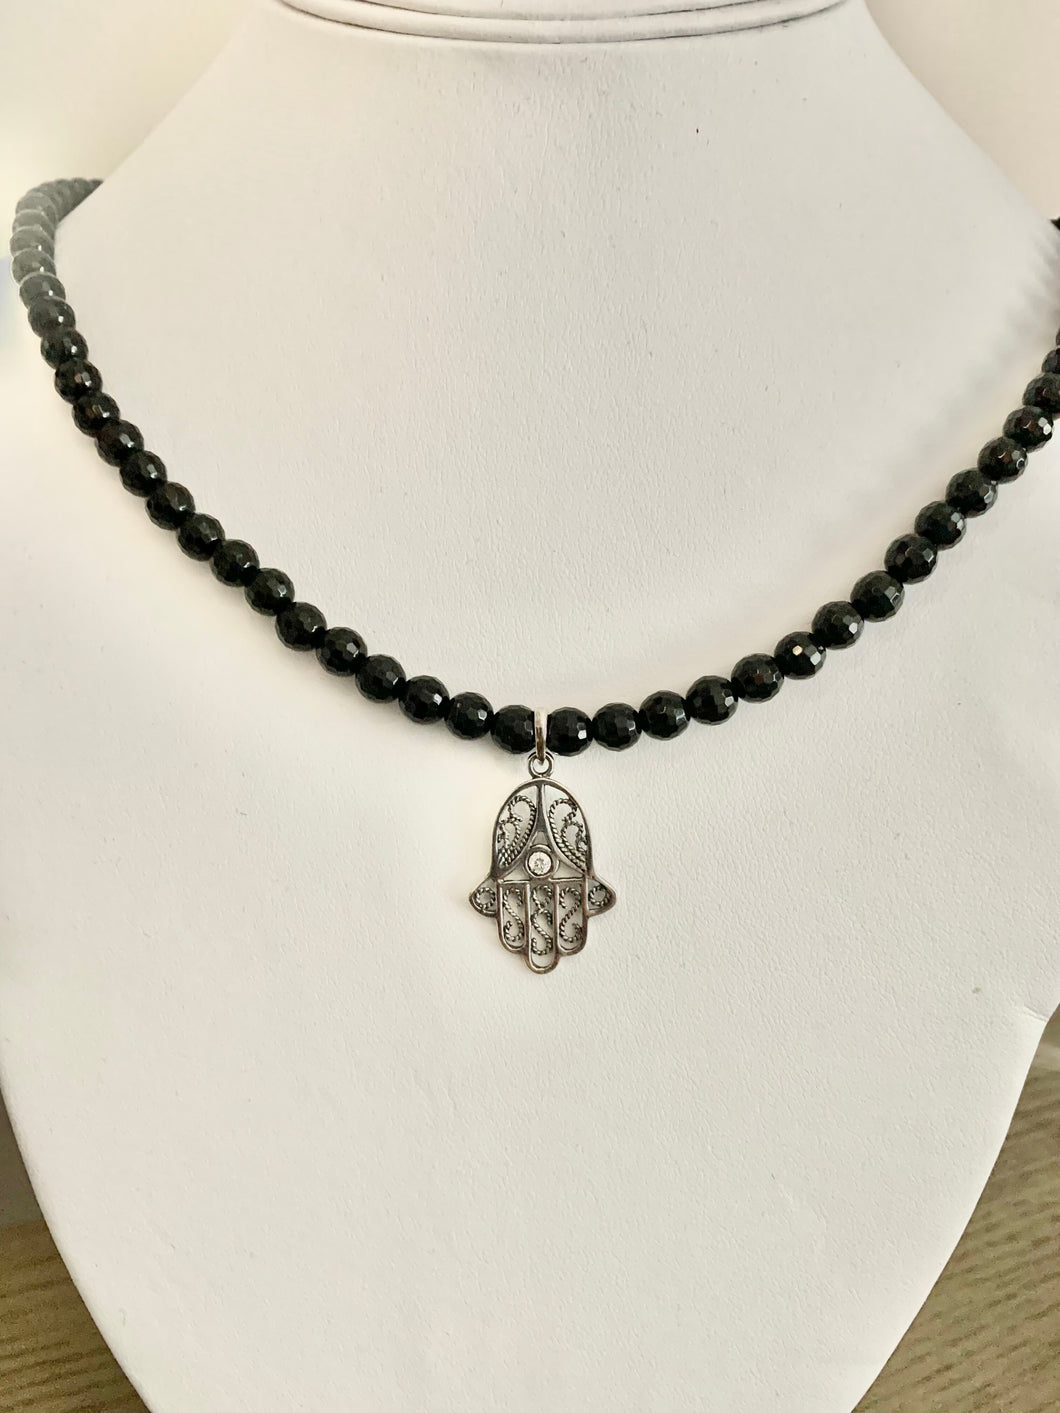 Onyx Necklace with Hamsa Pendant